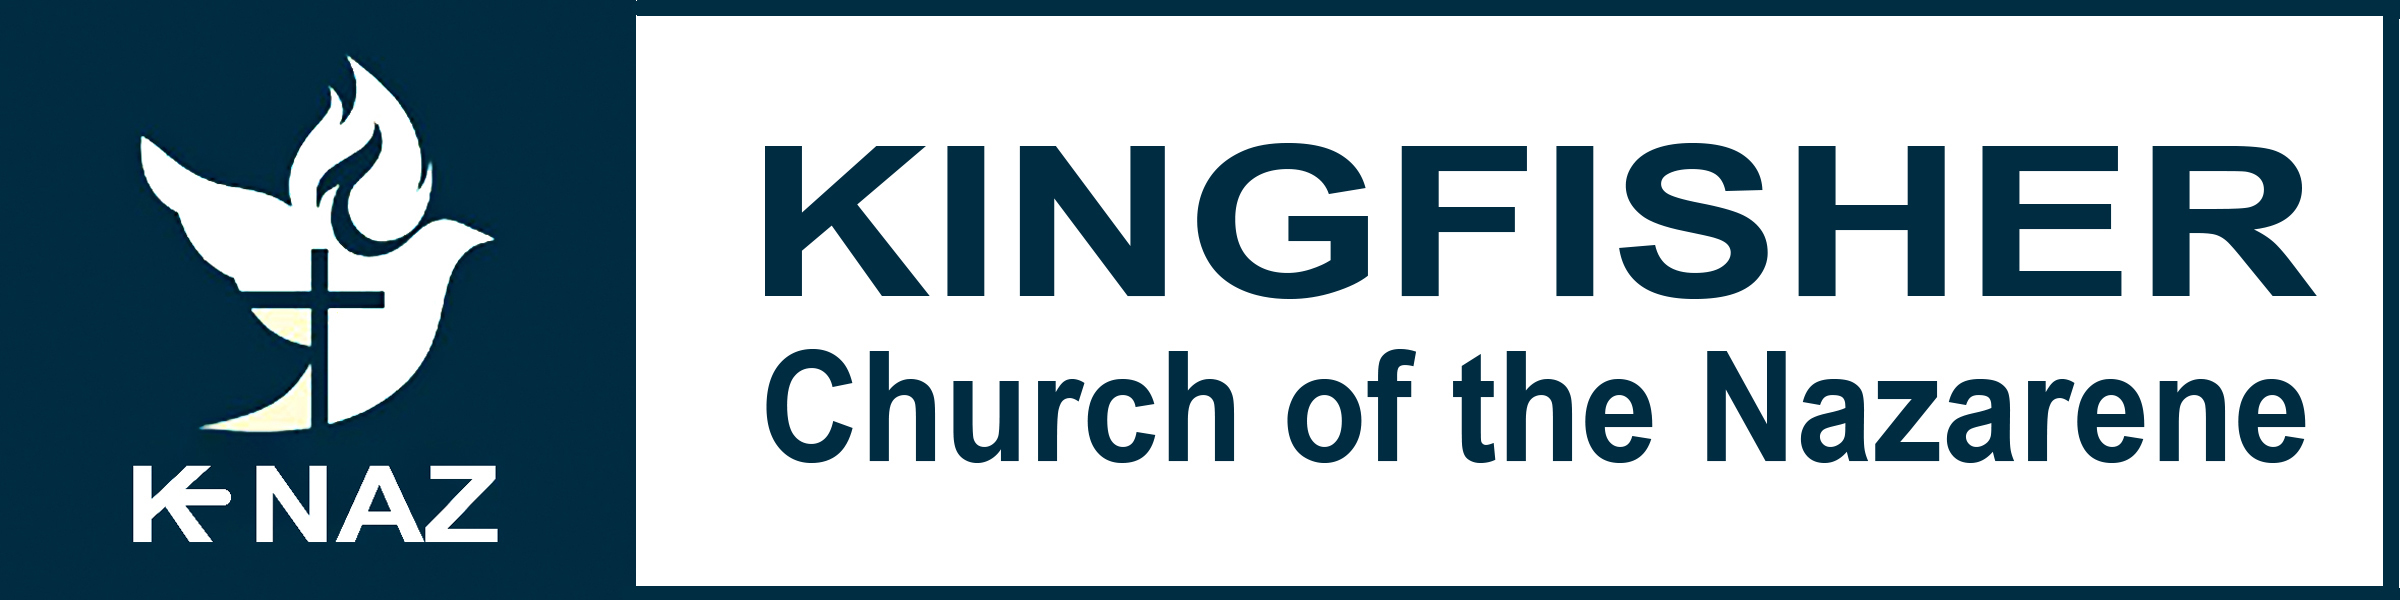 Kingfisher Church of the Nazarene